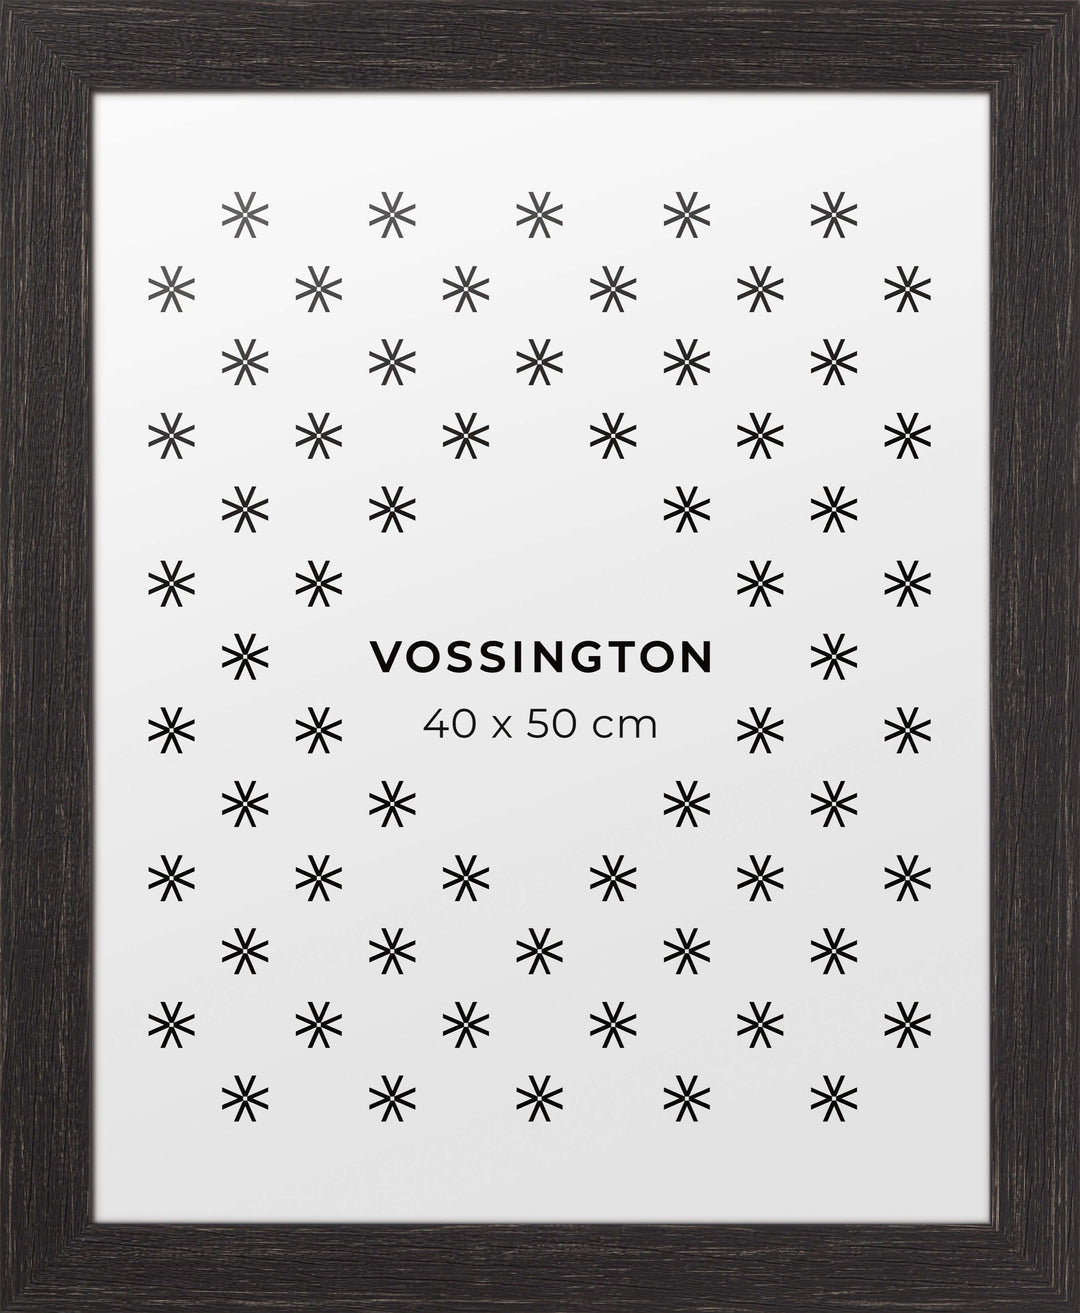 Cornici nere - Cornici per foto e quadri ben fatte e robuste – Vossington